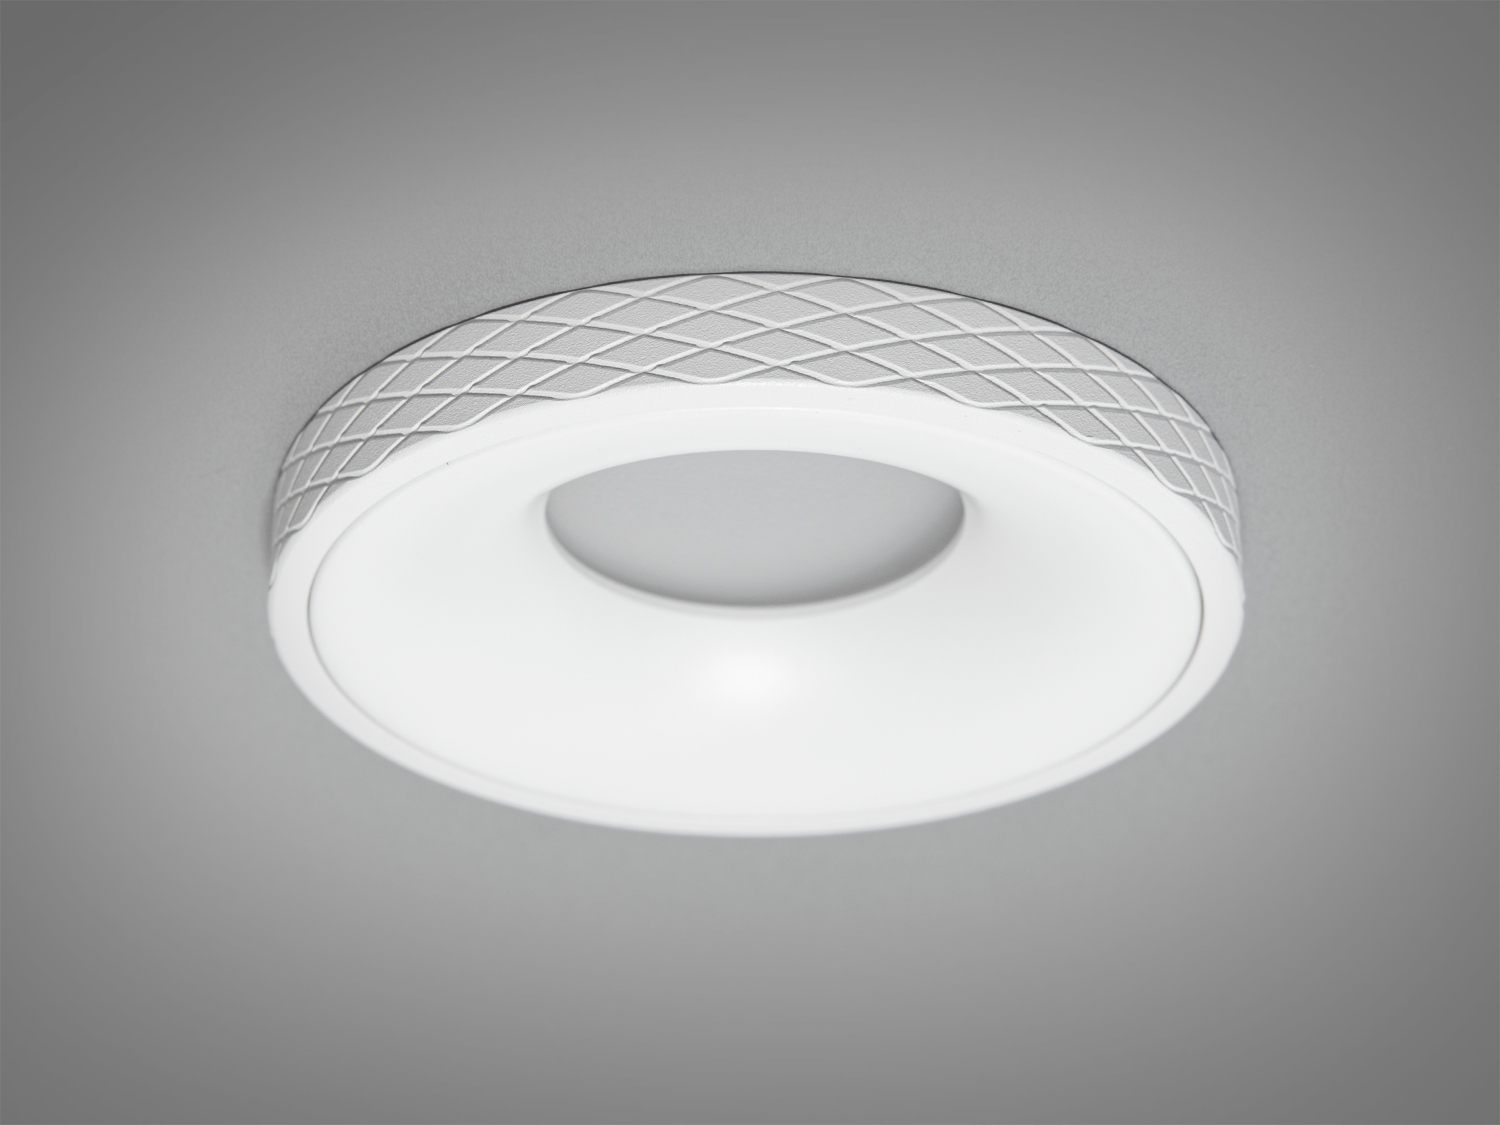 Білий круглий точковий світильник з алюмінію Точечные светильники, Врезка, Точечные светильники MR-16, Новинки